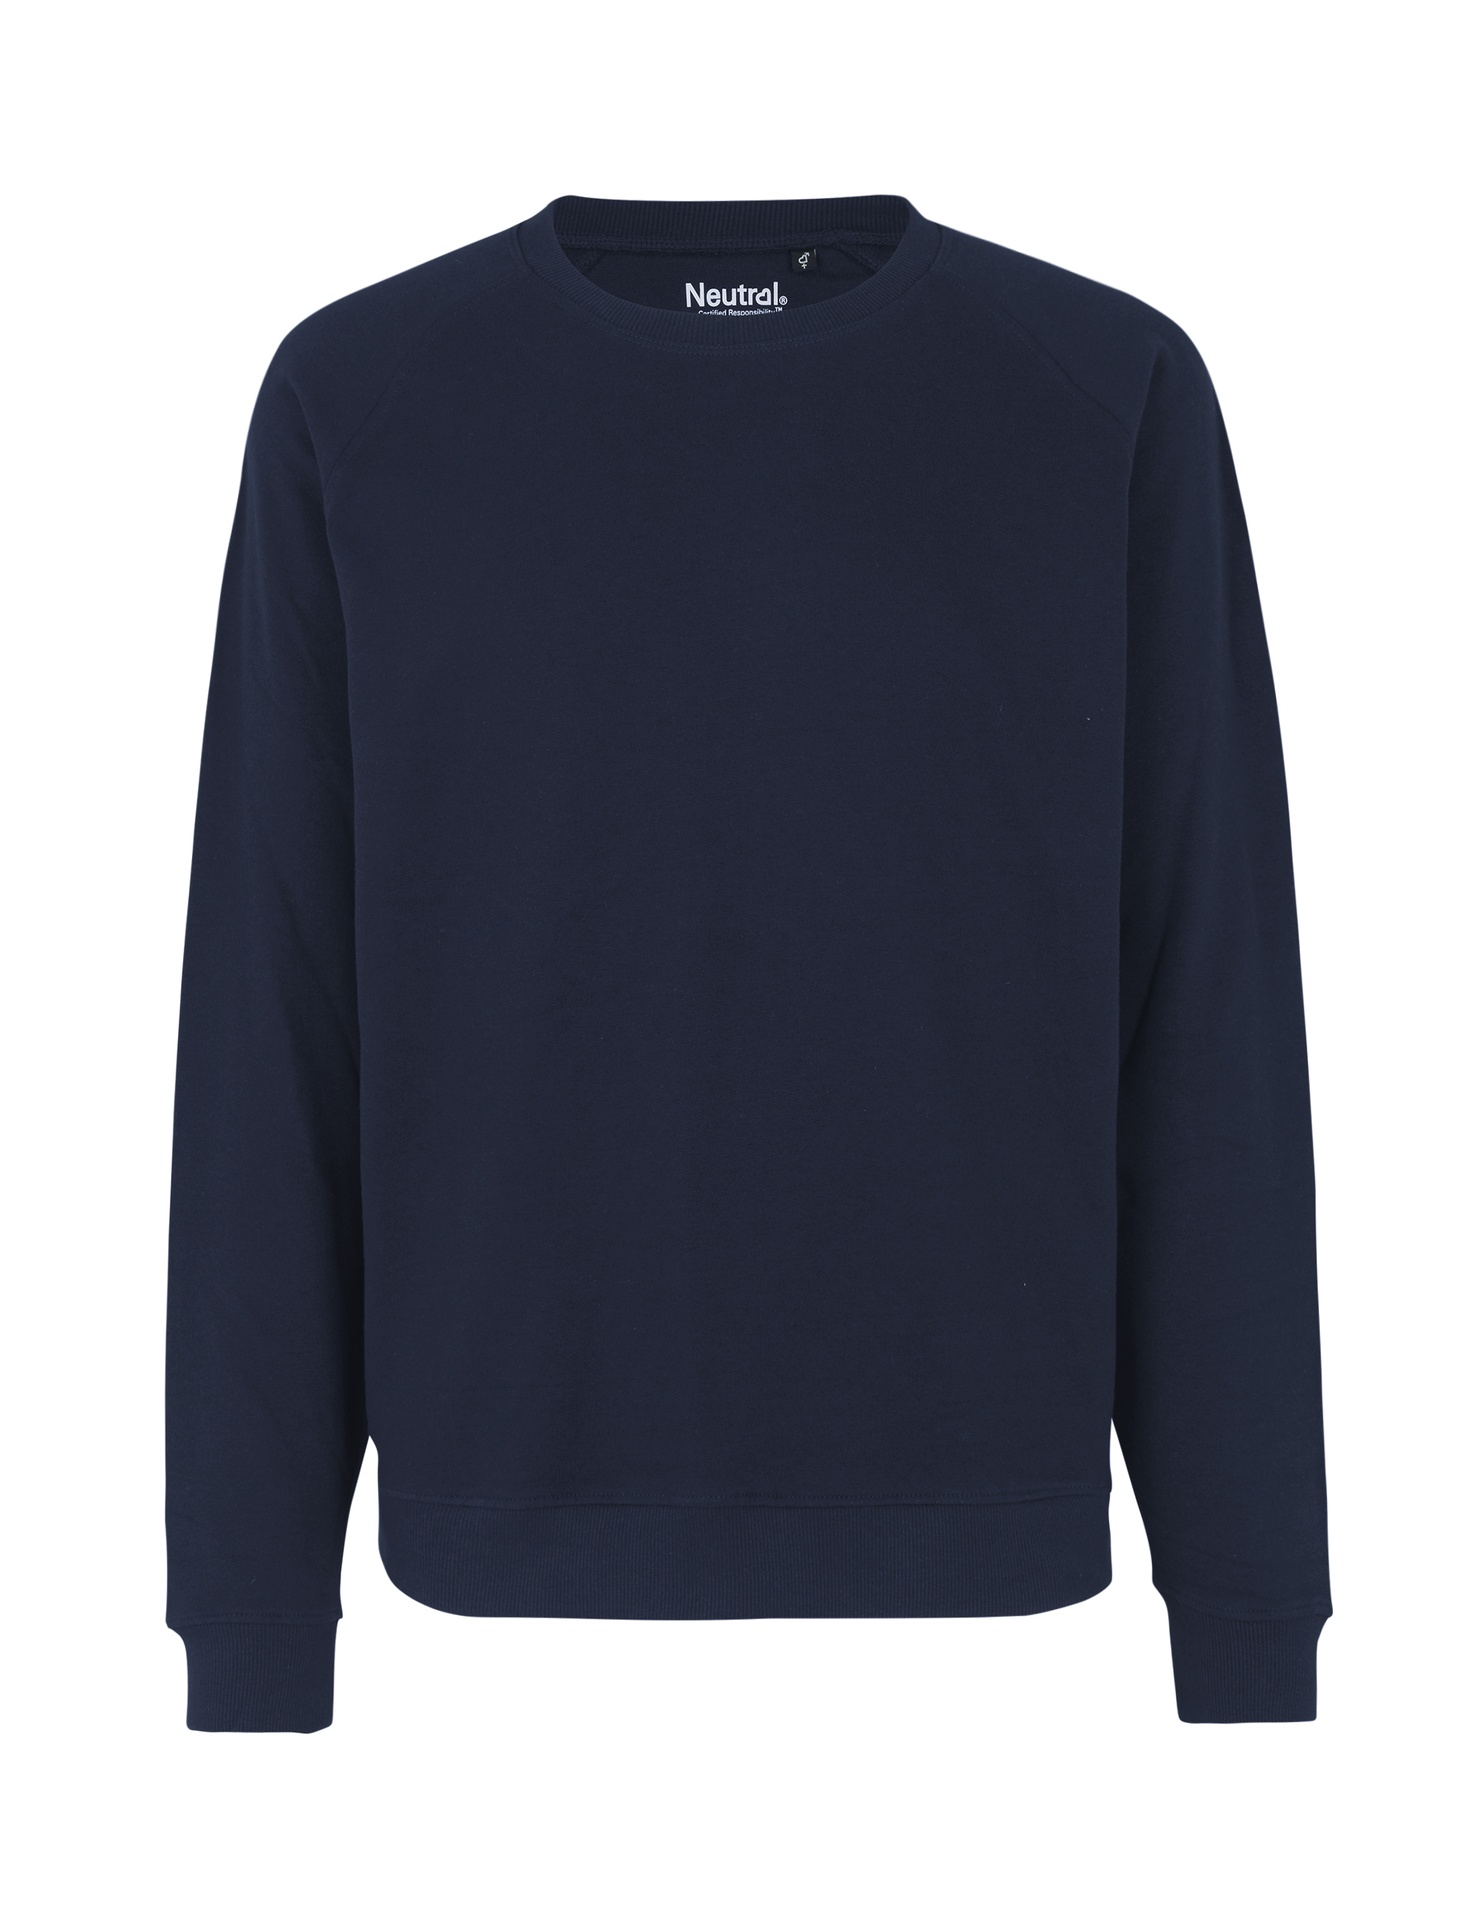 [PR/02671] Unisex Sweatshirt (Navy 04, S)